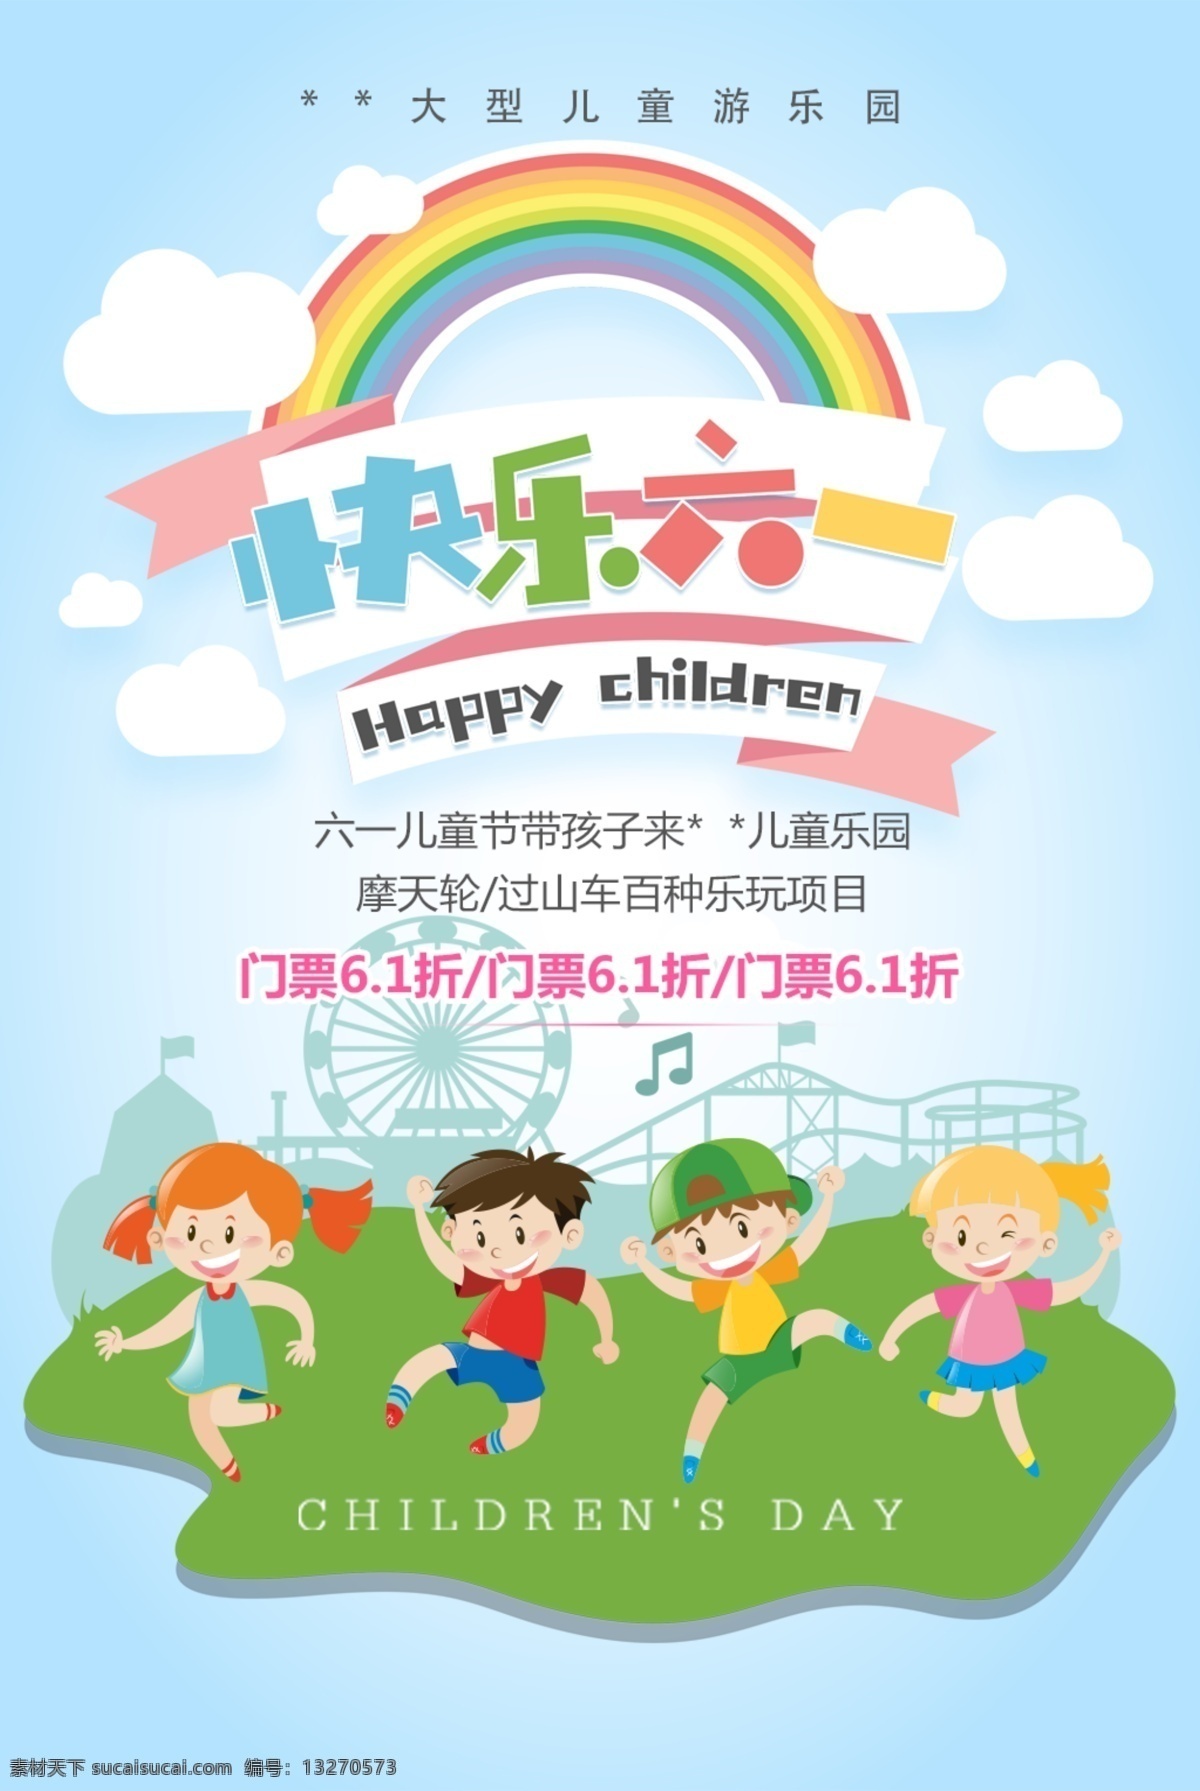 六一海报 61 儿童节 海报 背景 促销 儿童乐园